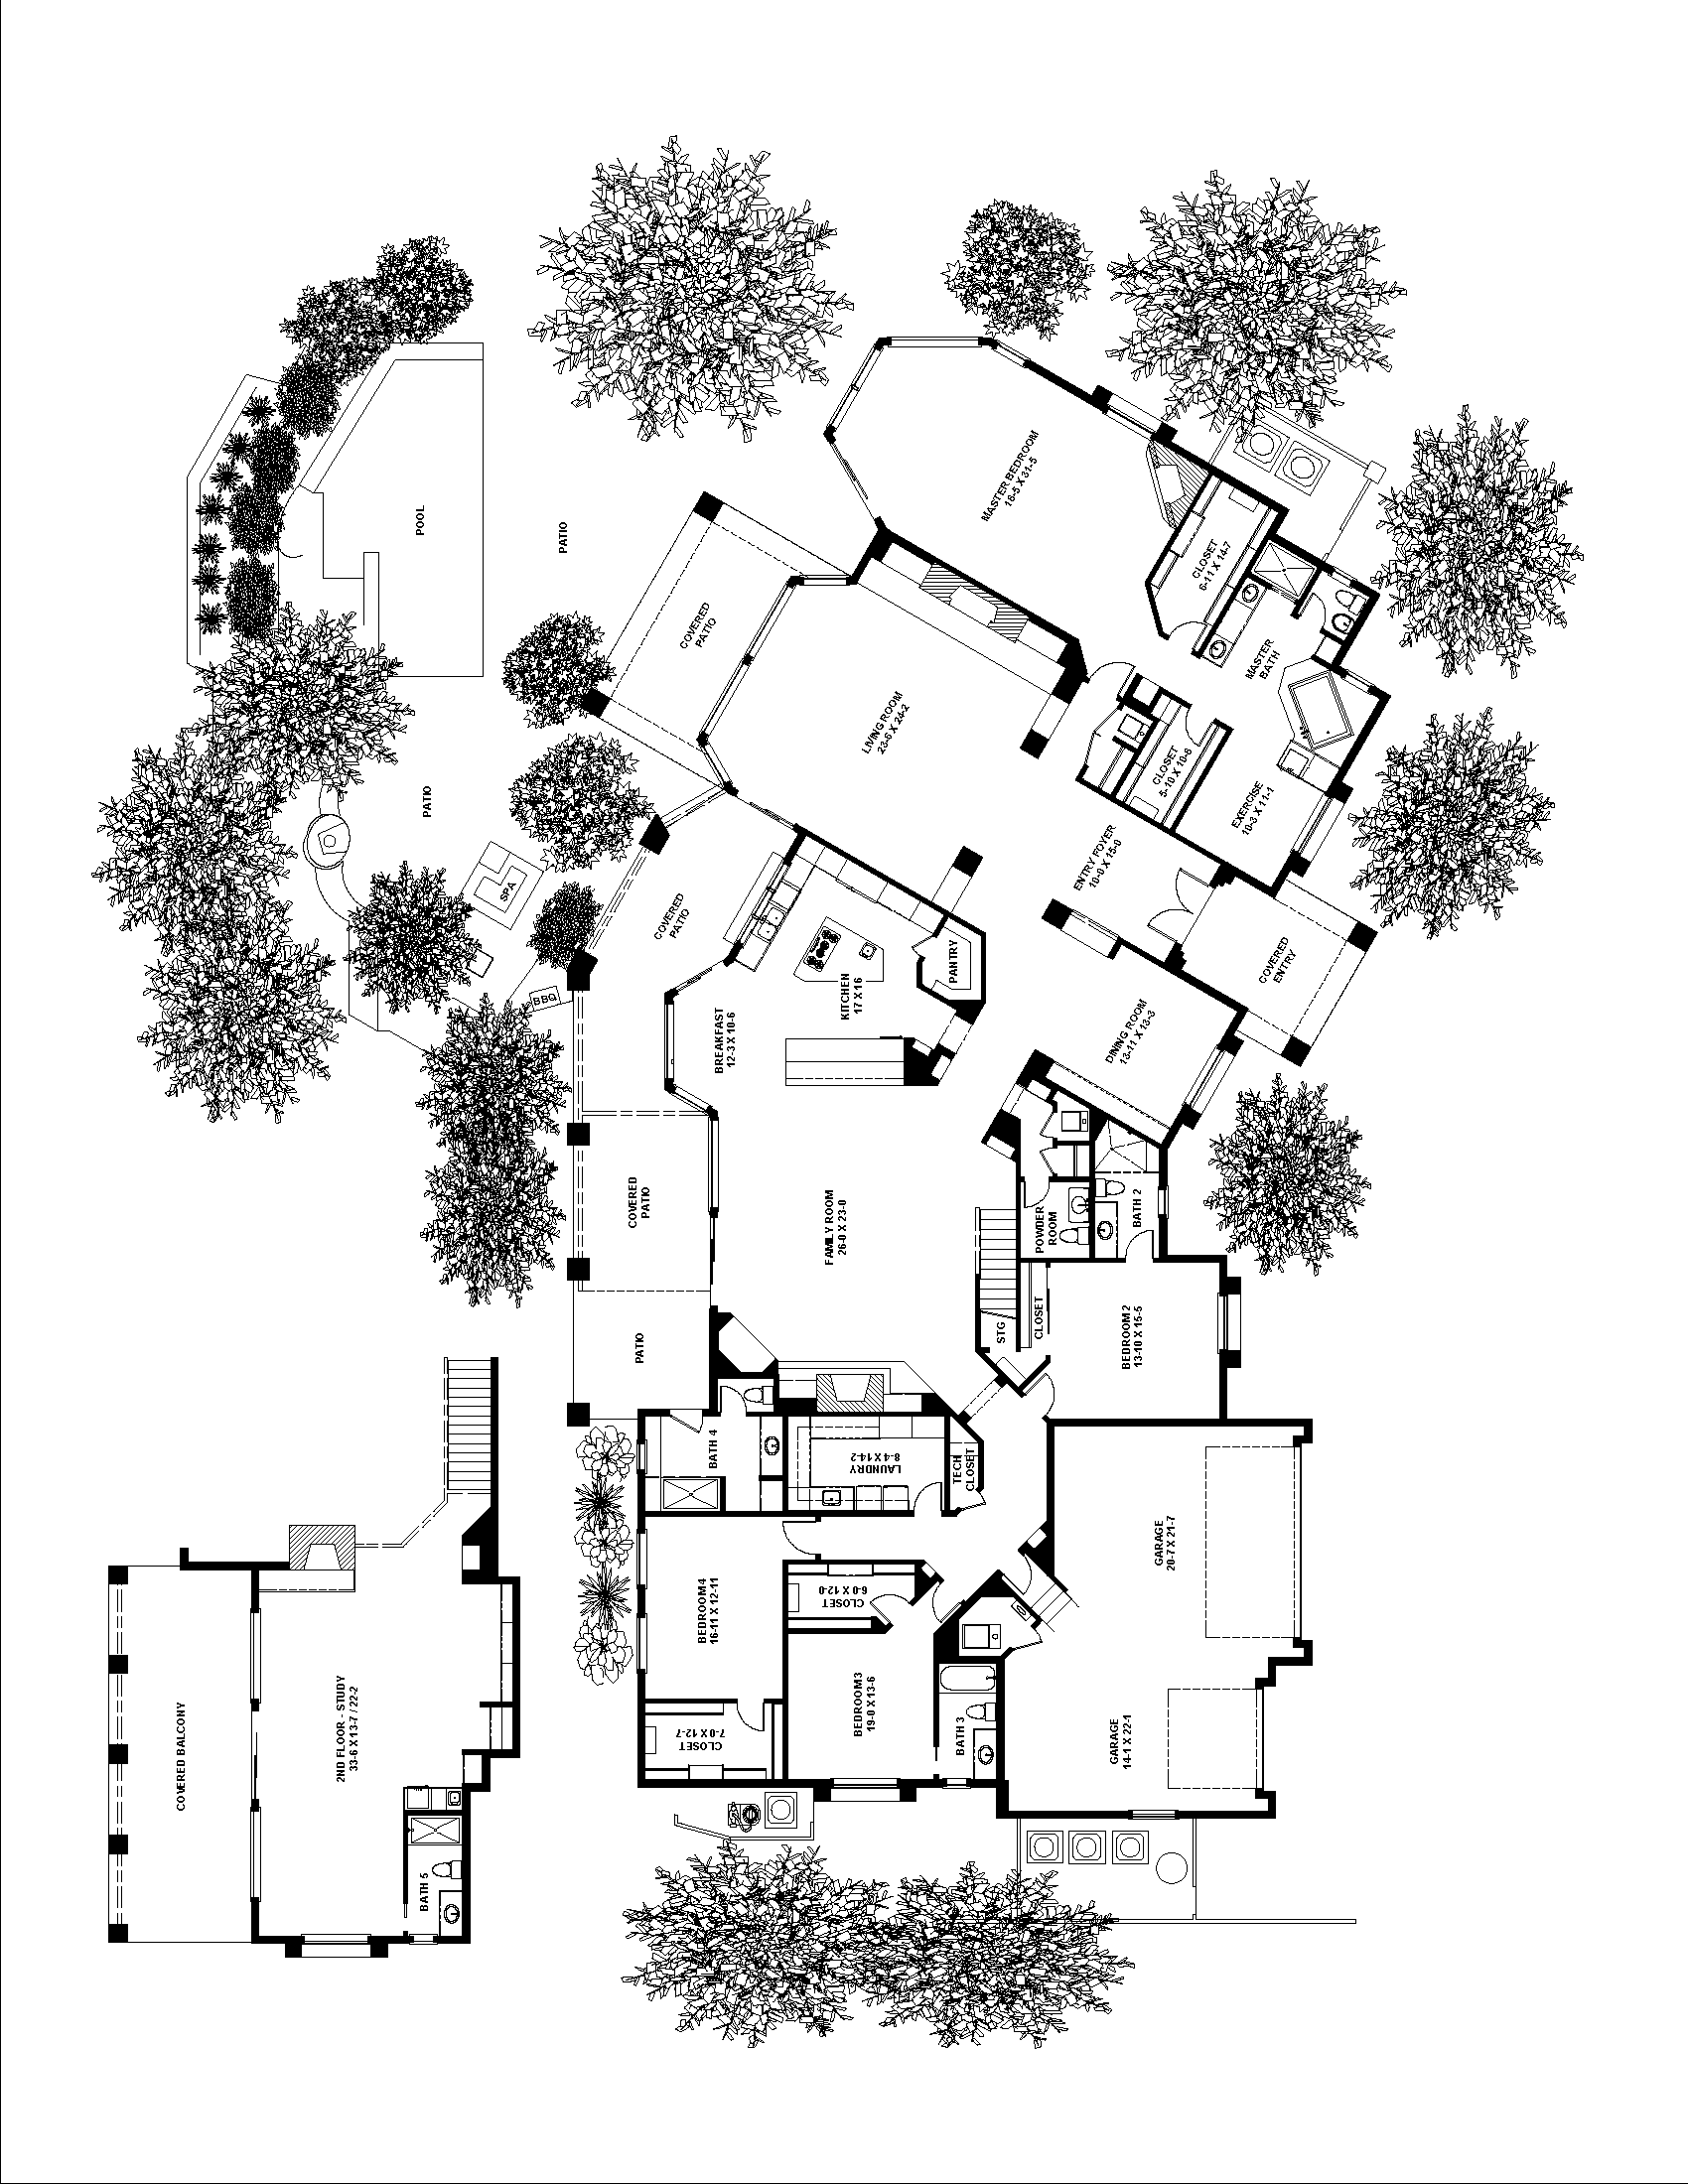 Sketchplan Image